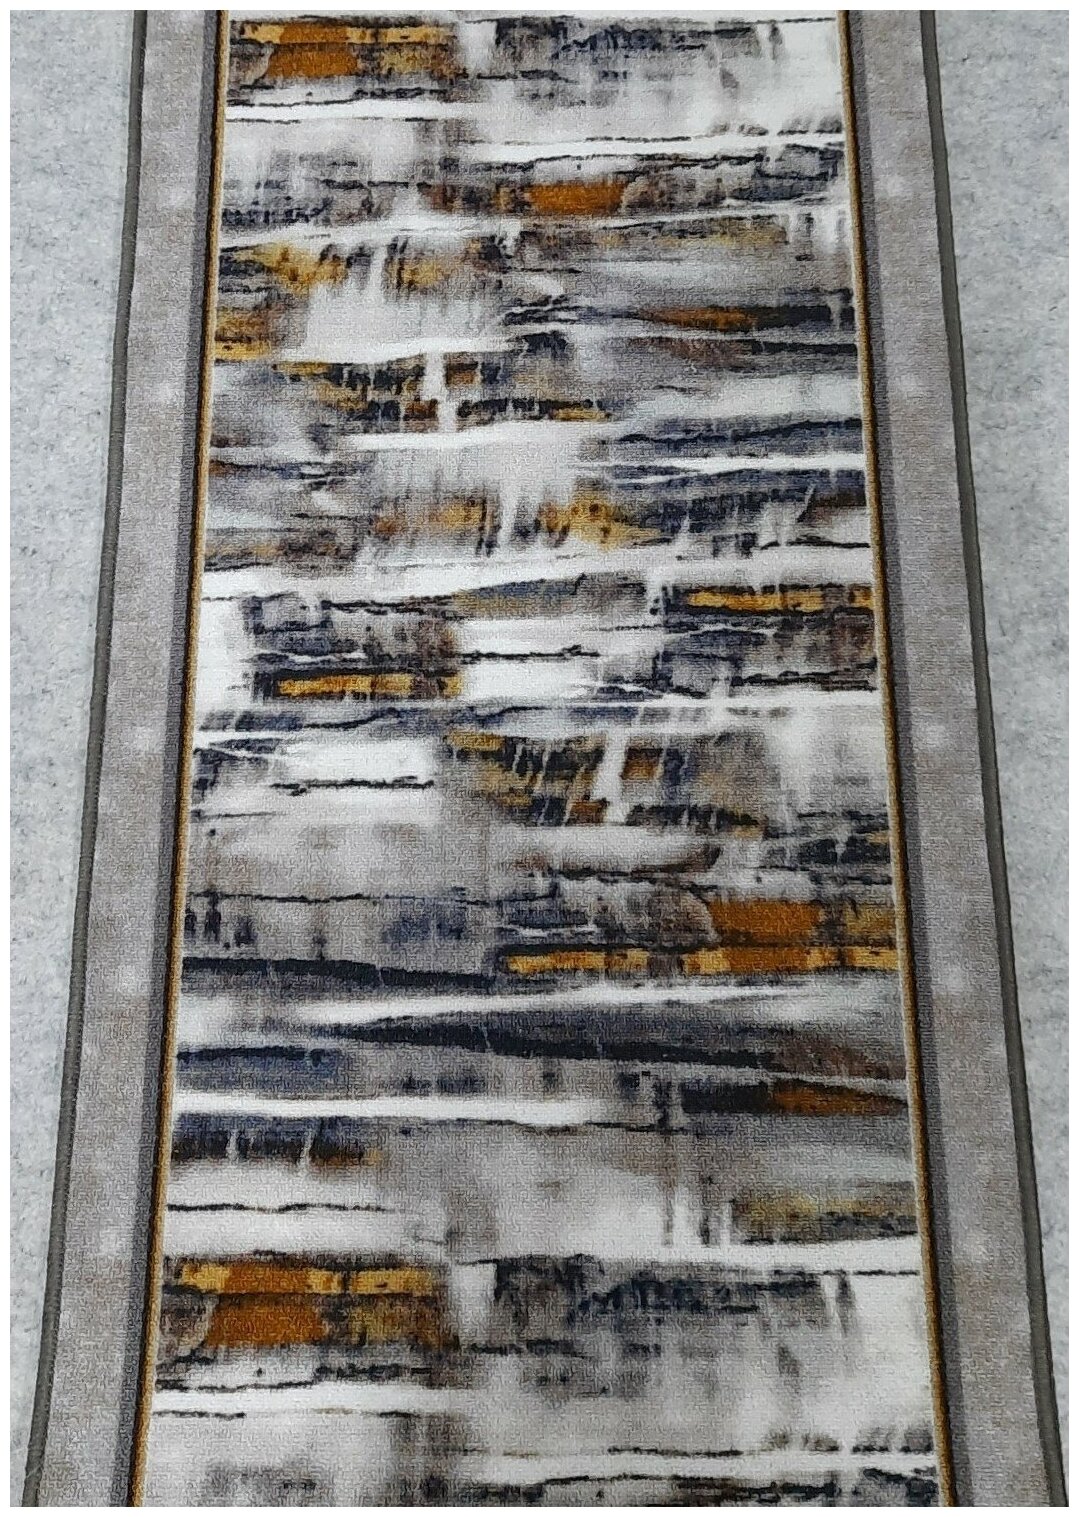 Ковровая дорожка на войлоке, Витебские ковры, с печатным рисунком, 2603/a2r/91, 0,6×1,5 м